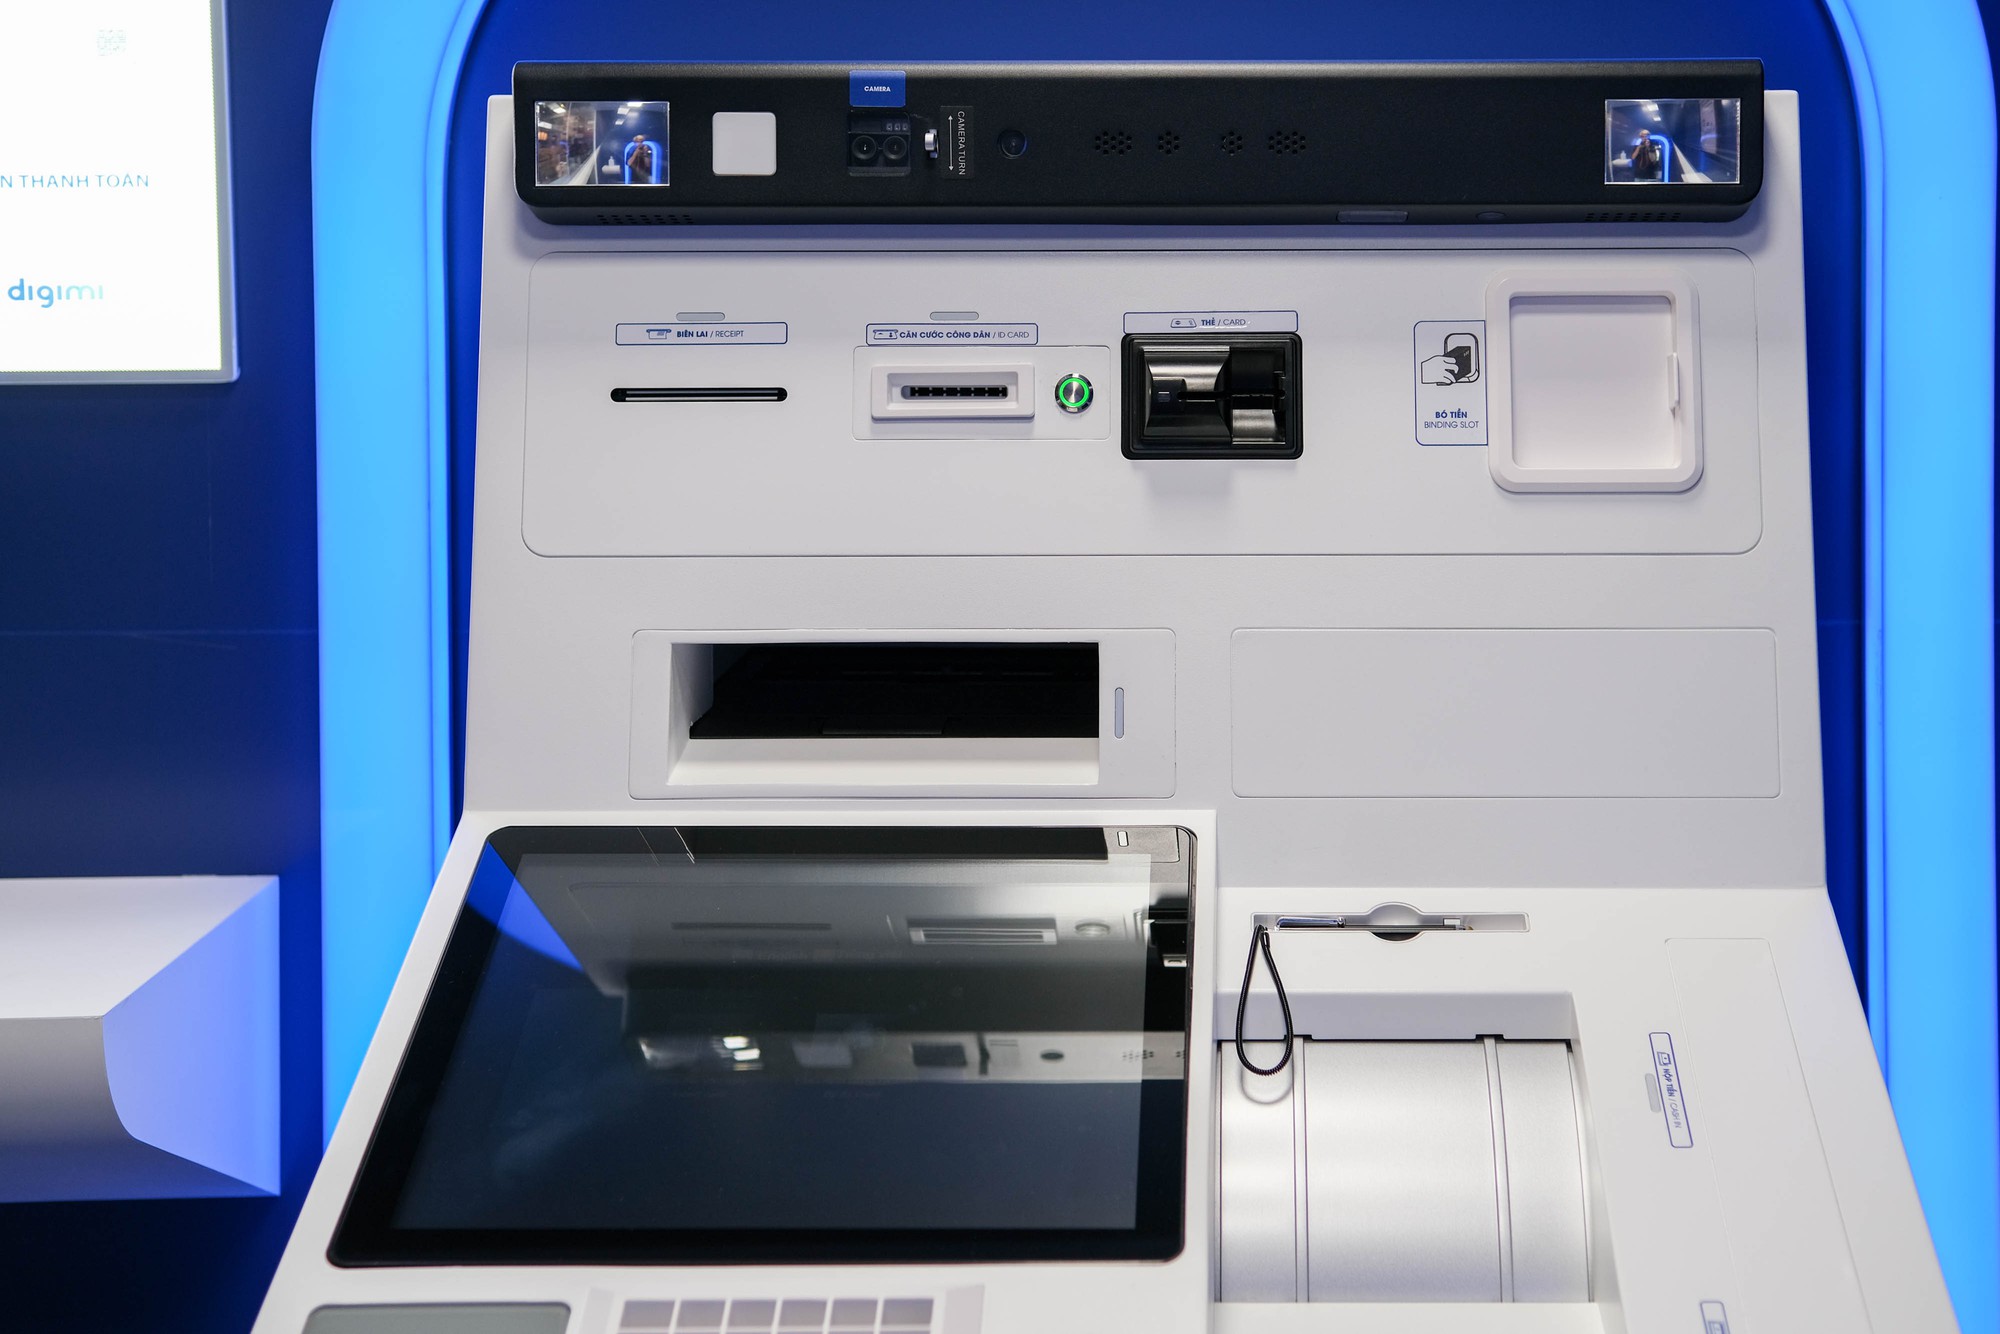 Trải nghiệm rút tiền tại ATM bằng CCCD gắn chip: Quy trình nhanh – gọn – lẹ, đã đến lúc tạm biệt thẻ ATM? - Ảnh 2.